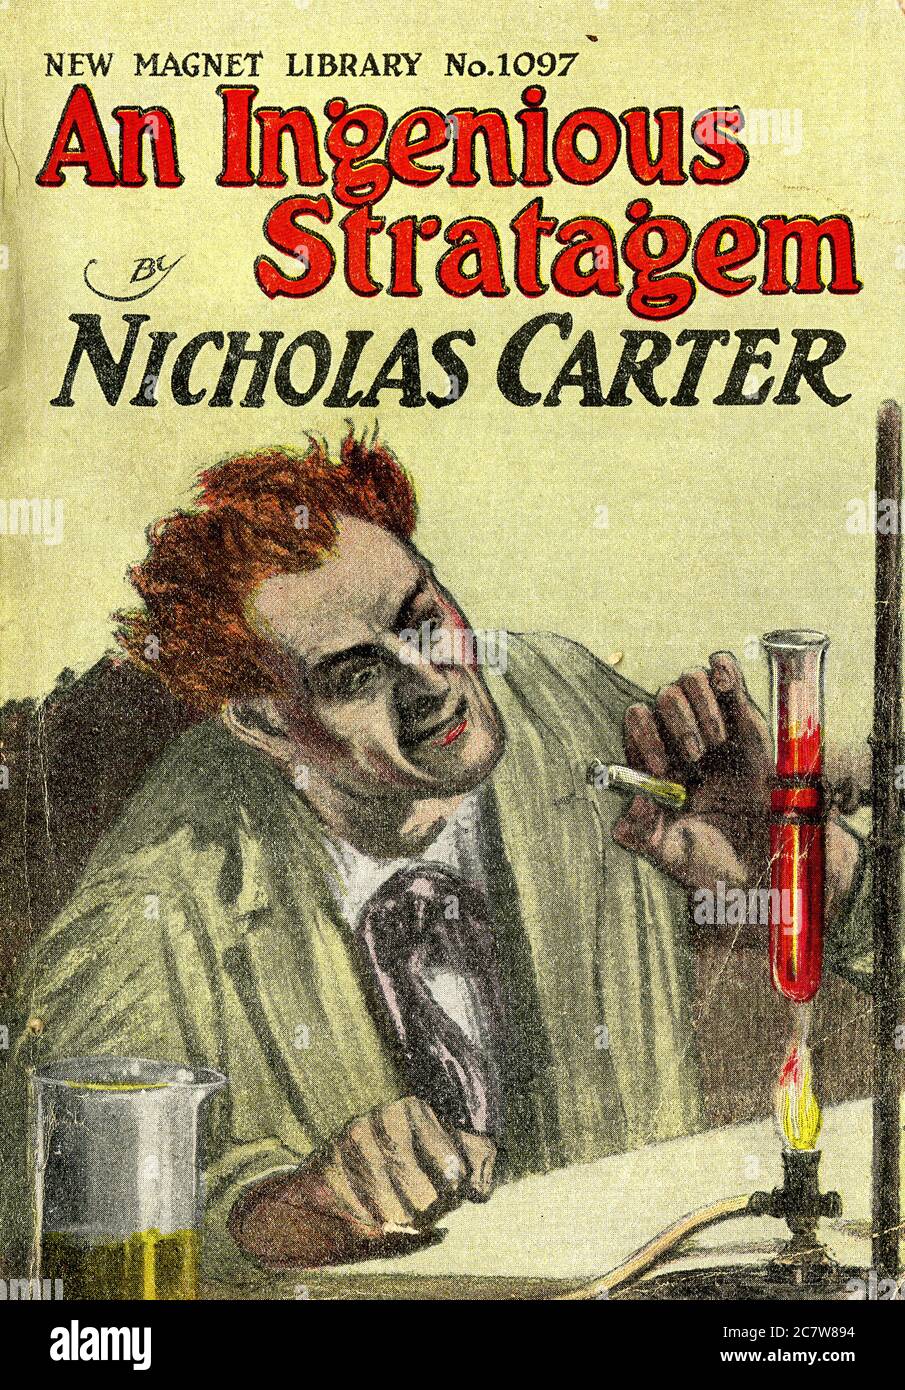 Nicholas carter - un ingegnoso Stratagem - Nuova Biblioteca di Magnet - Letterario della pasta d'epoca Foto Stock